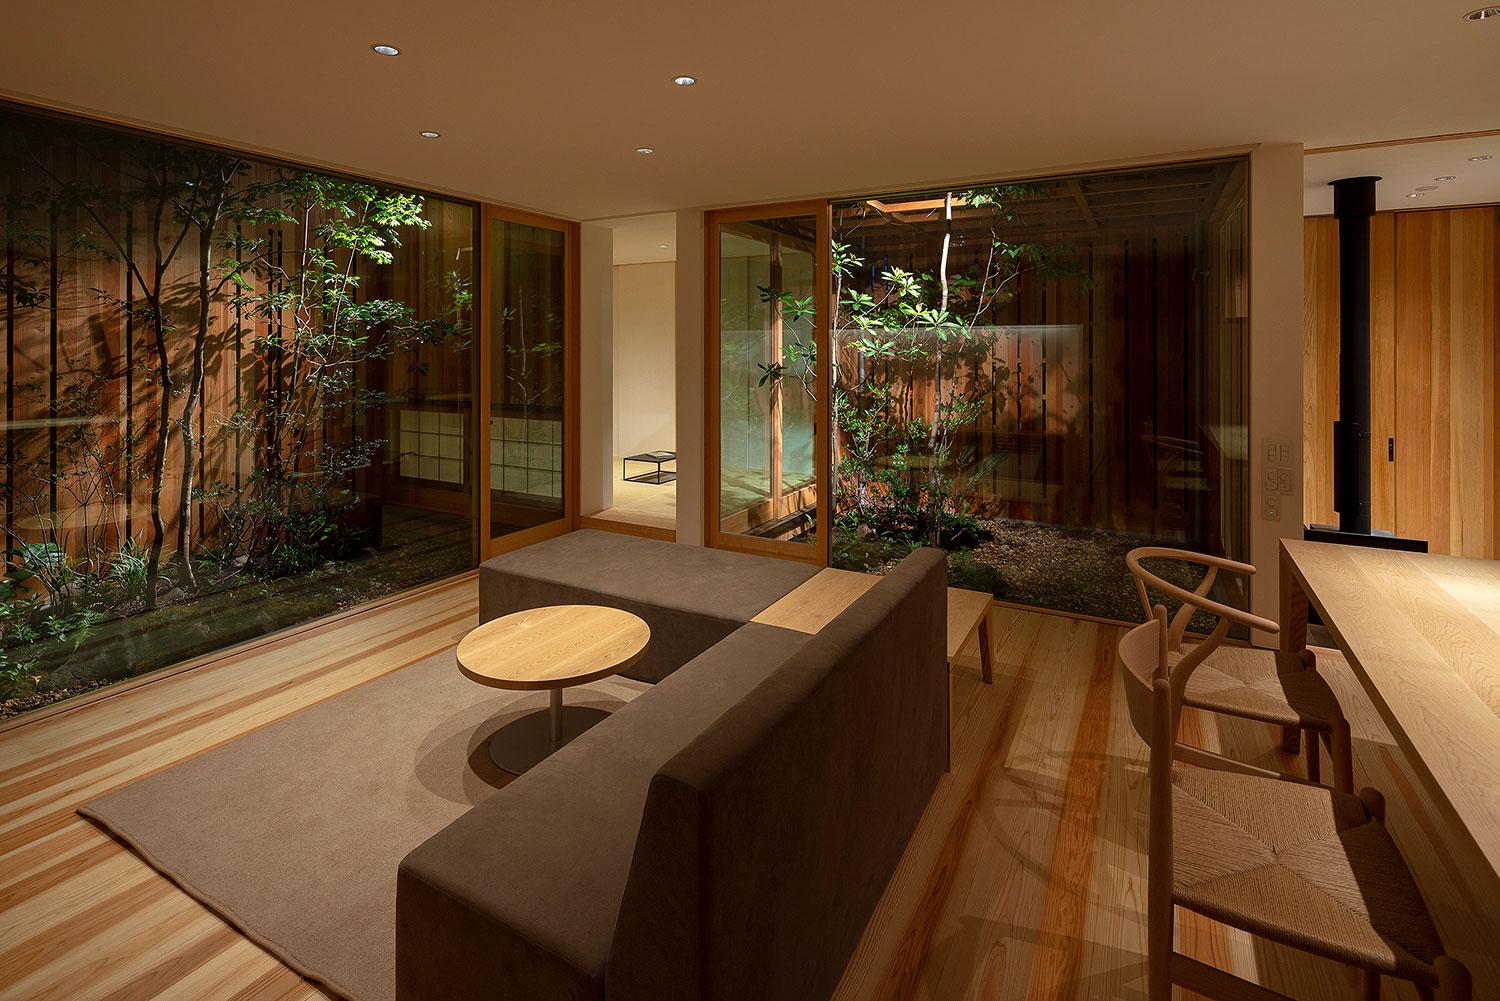 最美的風景就在窗外，在日本簡約木造平房內體驗四季動人景緻